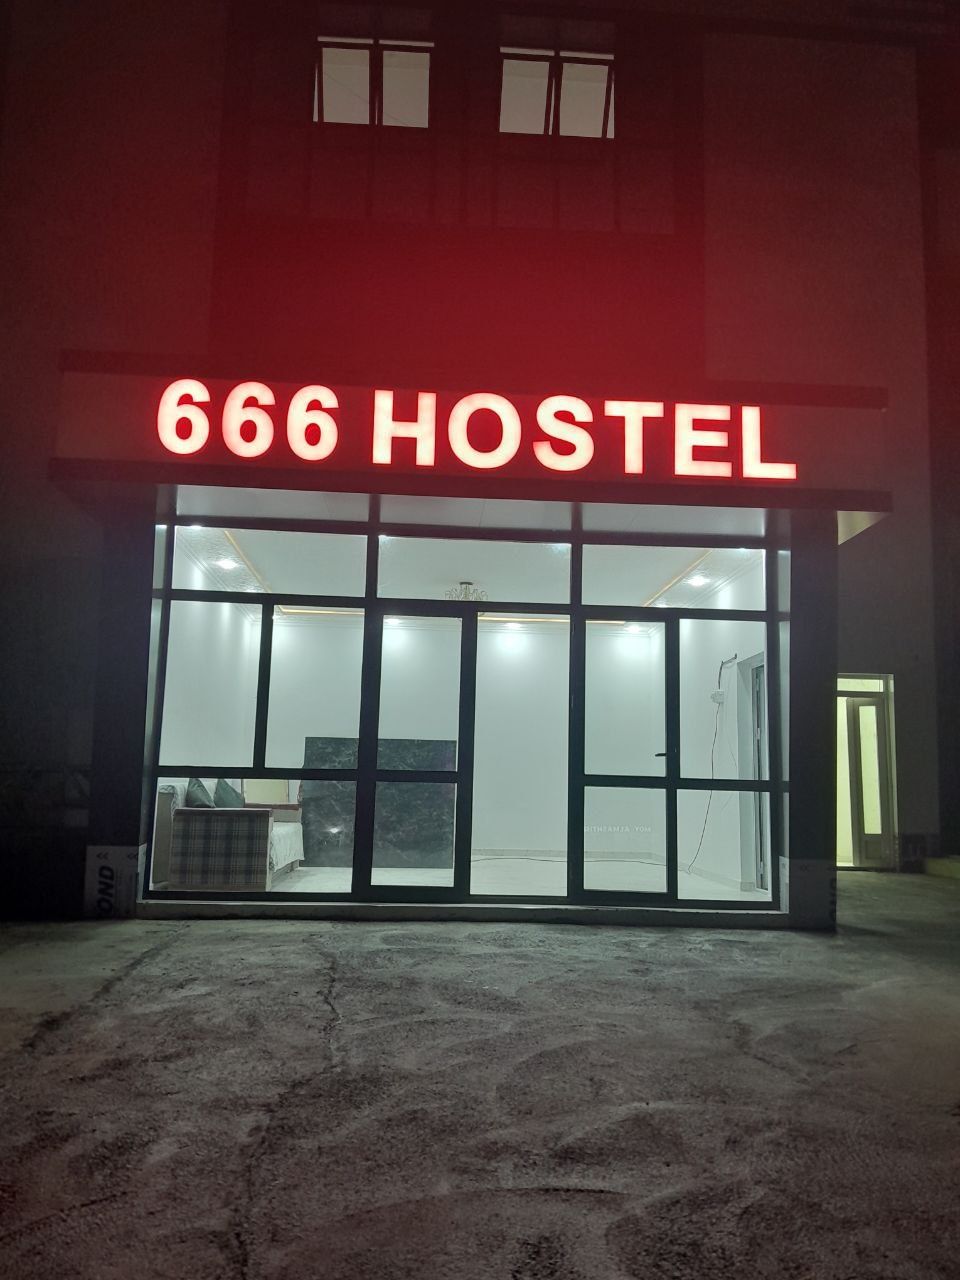 Гостиница без загса Uchtepa 666 Hotel 24/7